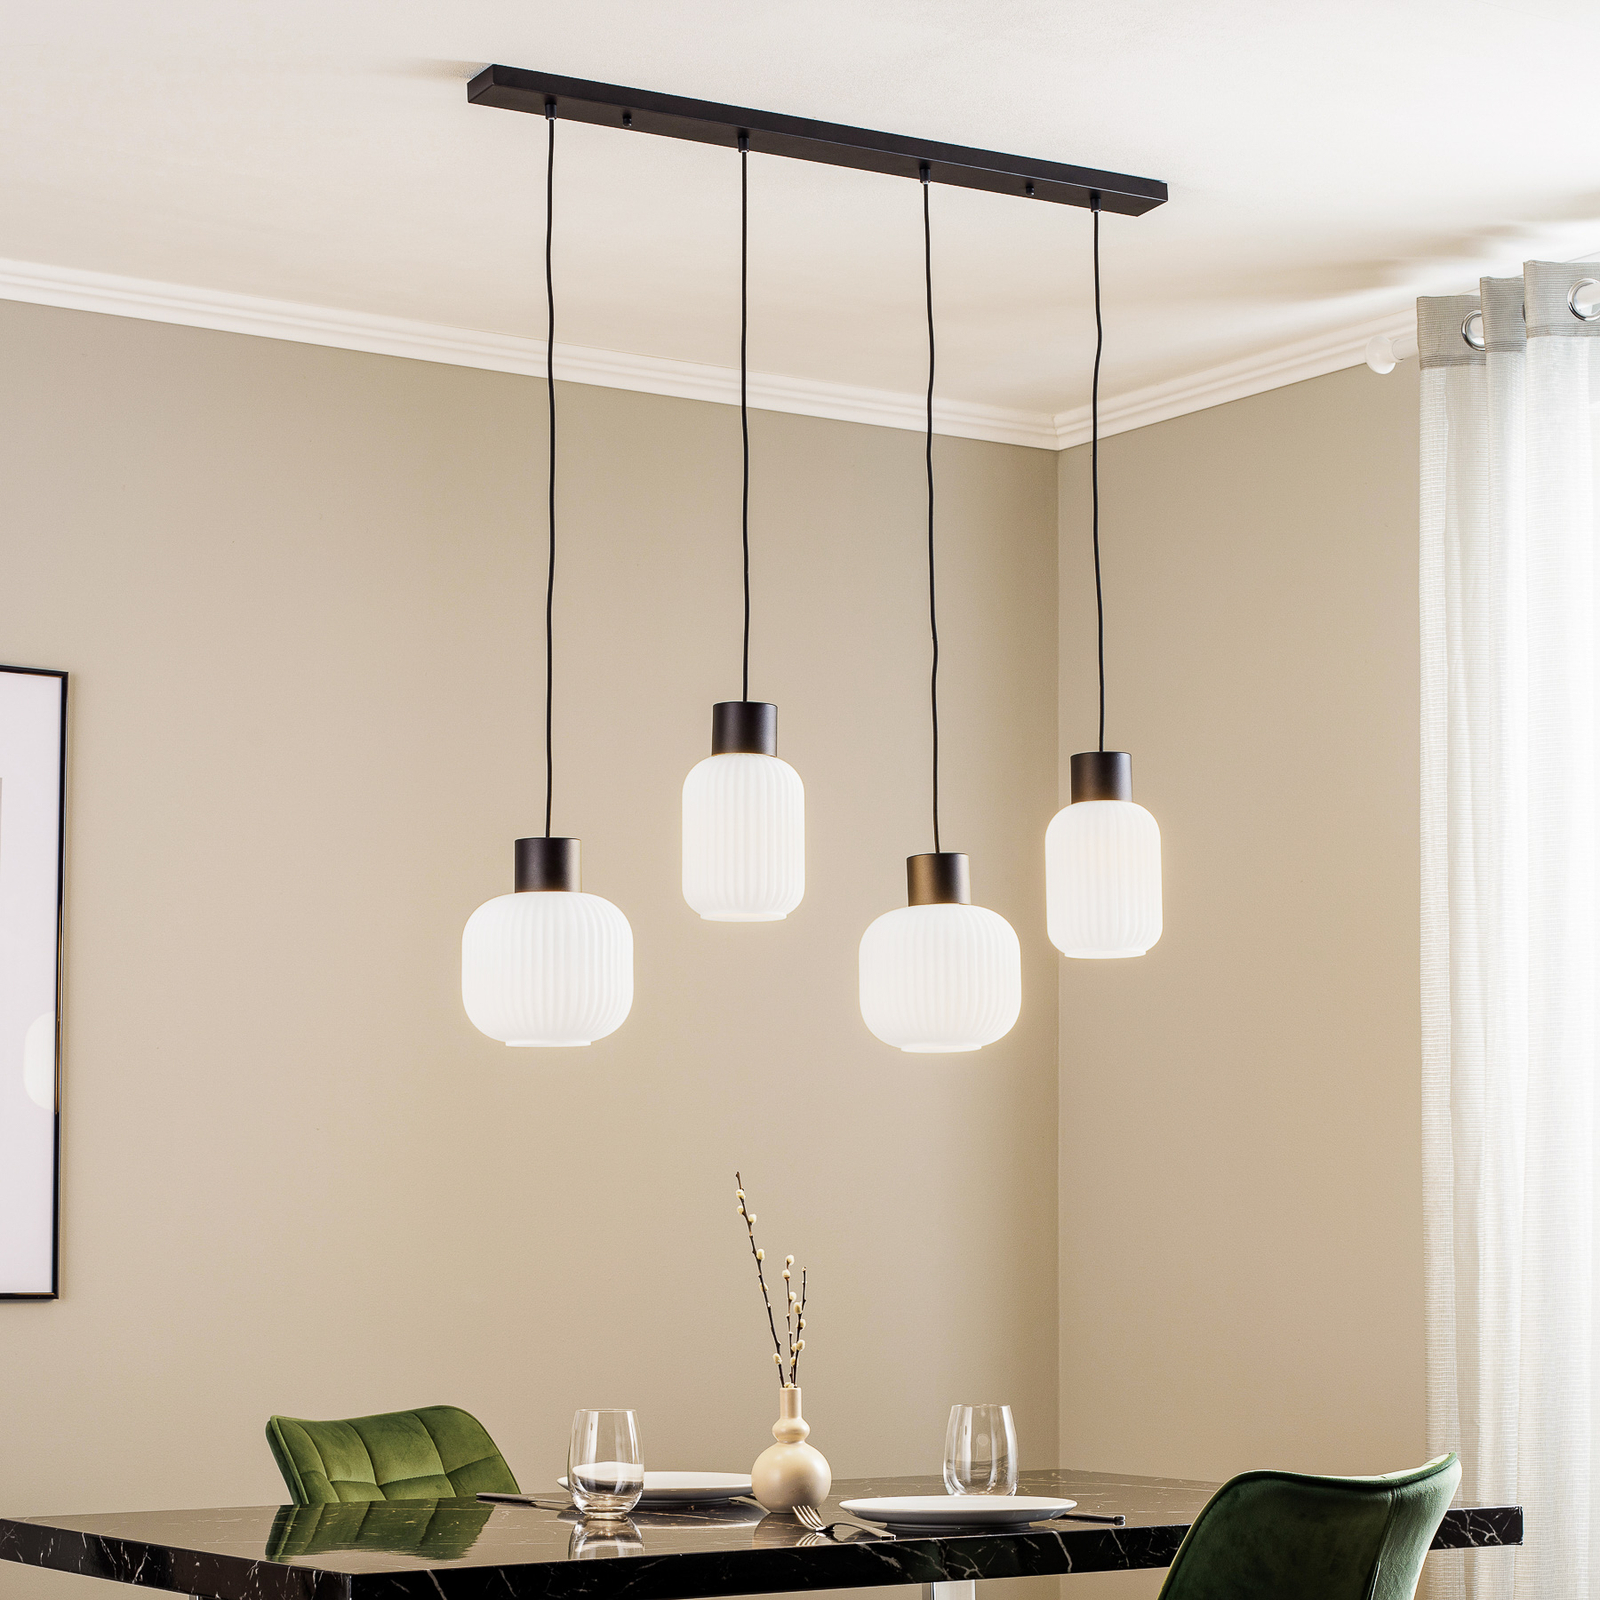 Lucande Lomeris hanglamp, 4-lamps, wit